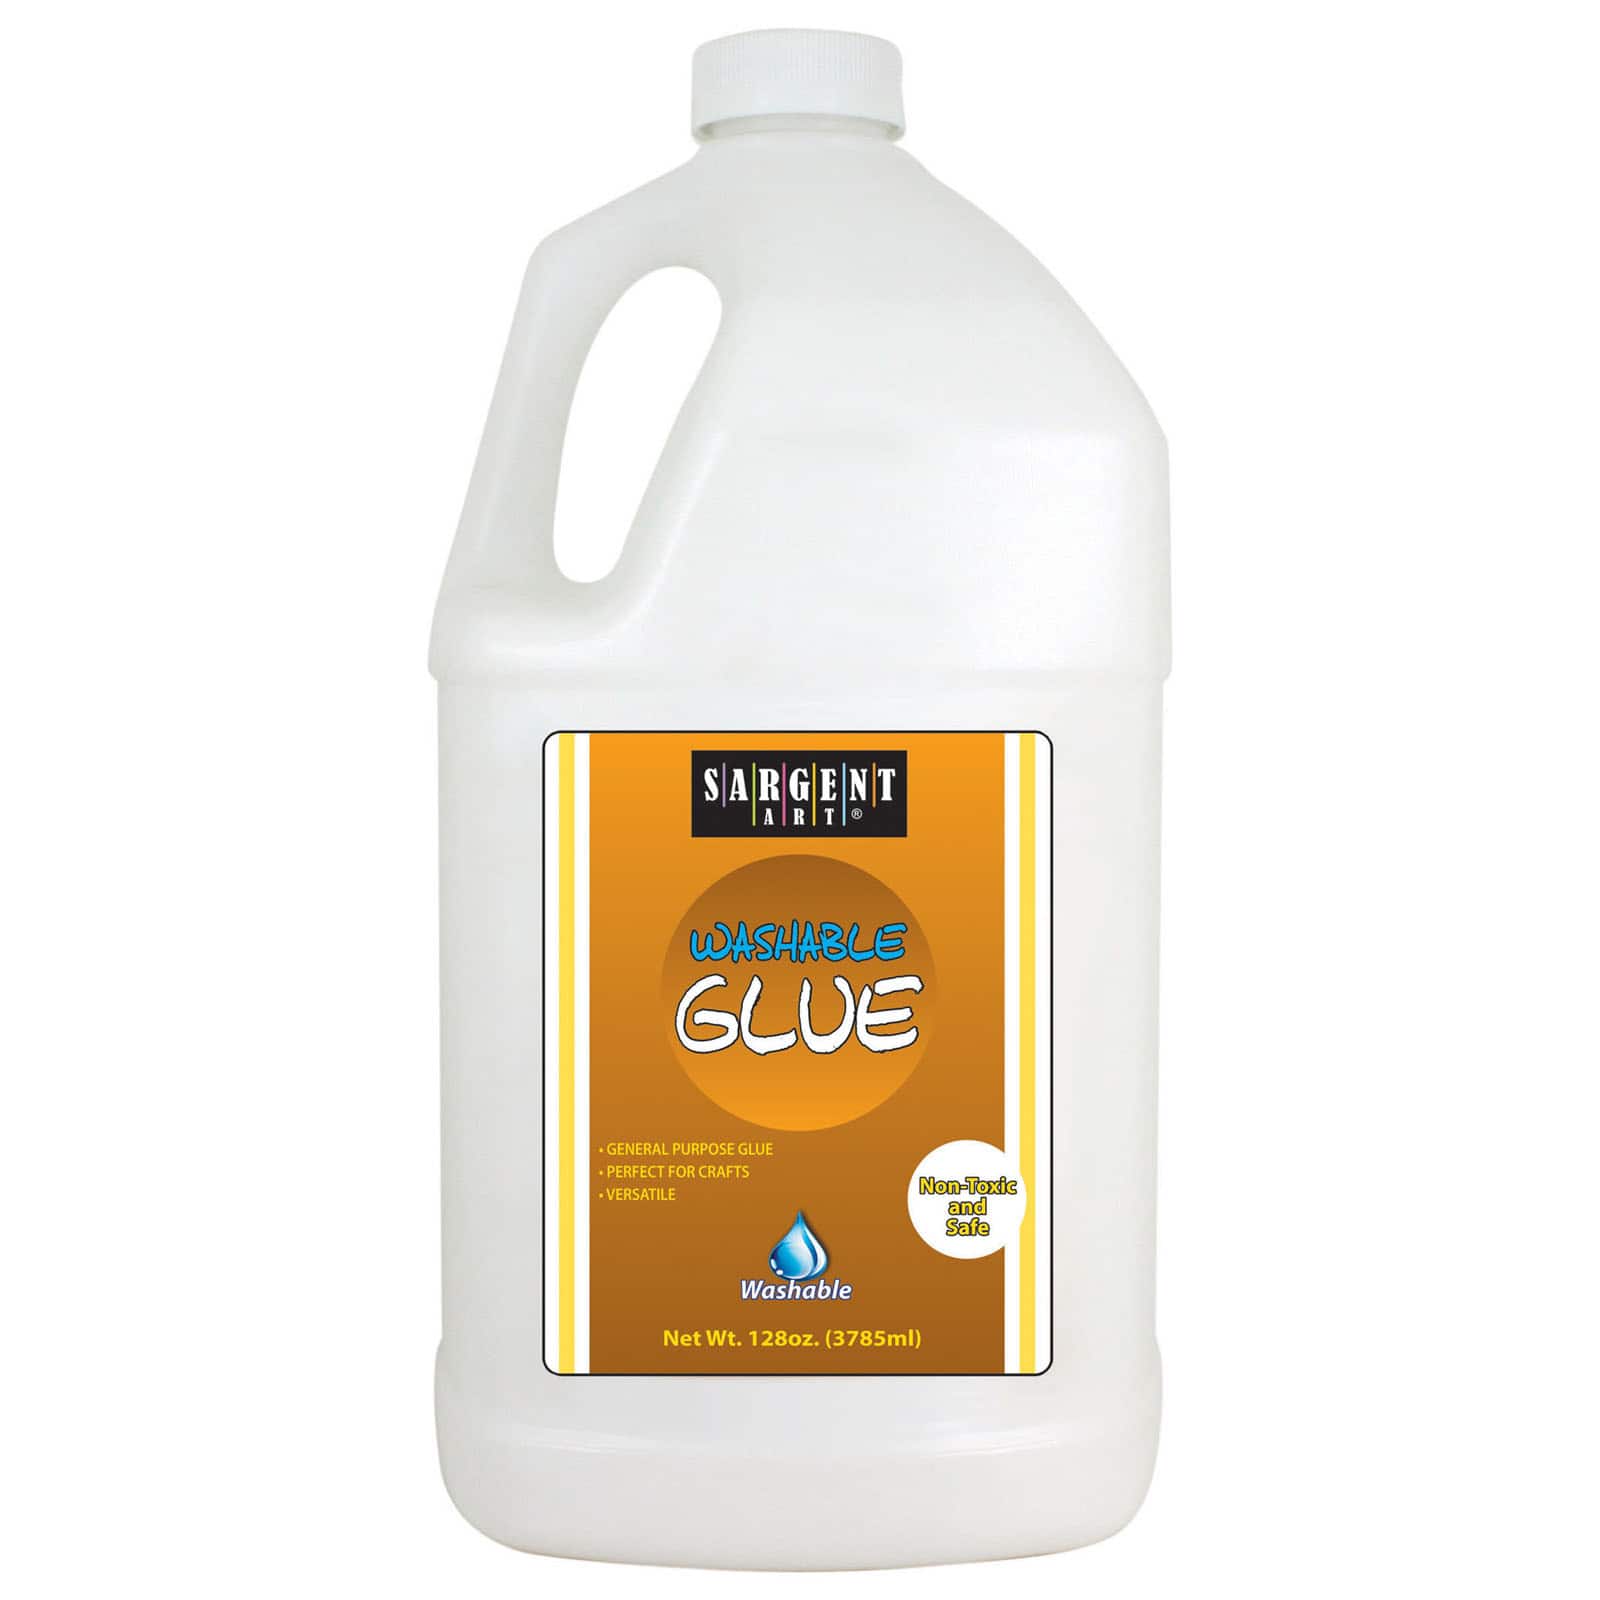 Washable Glue, Gallon | Rpc214190